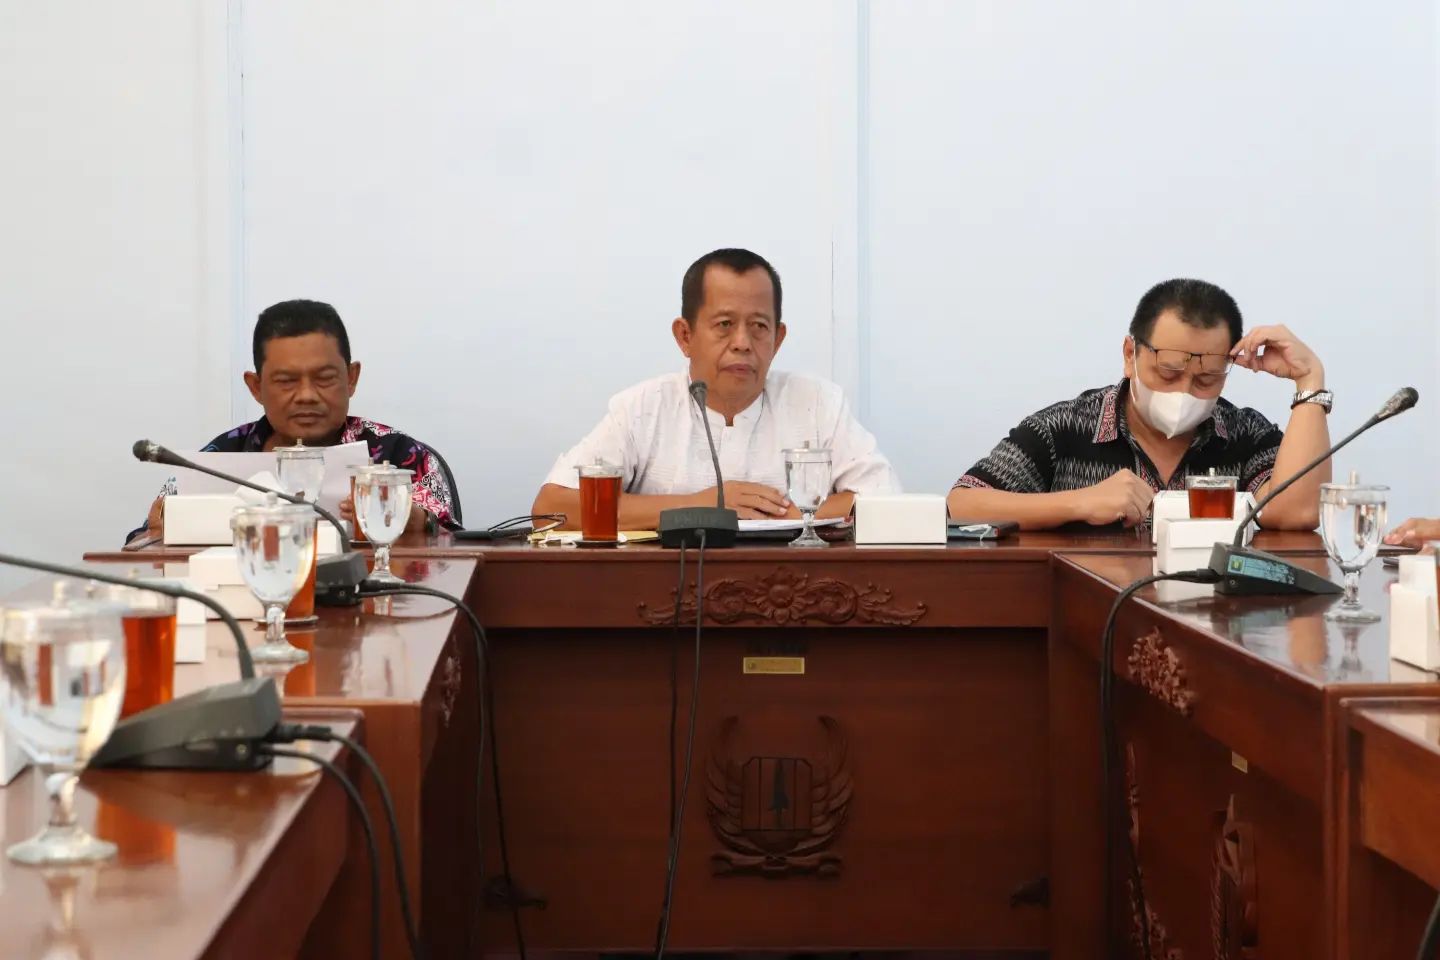 Ketua Komisi IV DPRD Kabupaten Pekalongan Drs. H. Abdul Munir Memimpin Rapat Kerja Komisi IV Bersama Mitra Perangkat Daerah